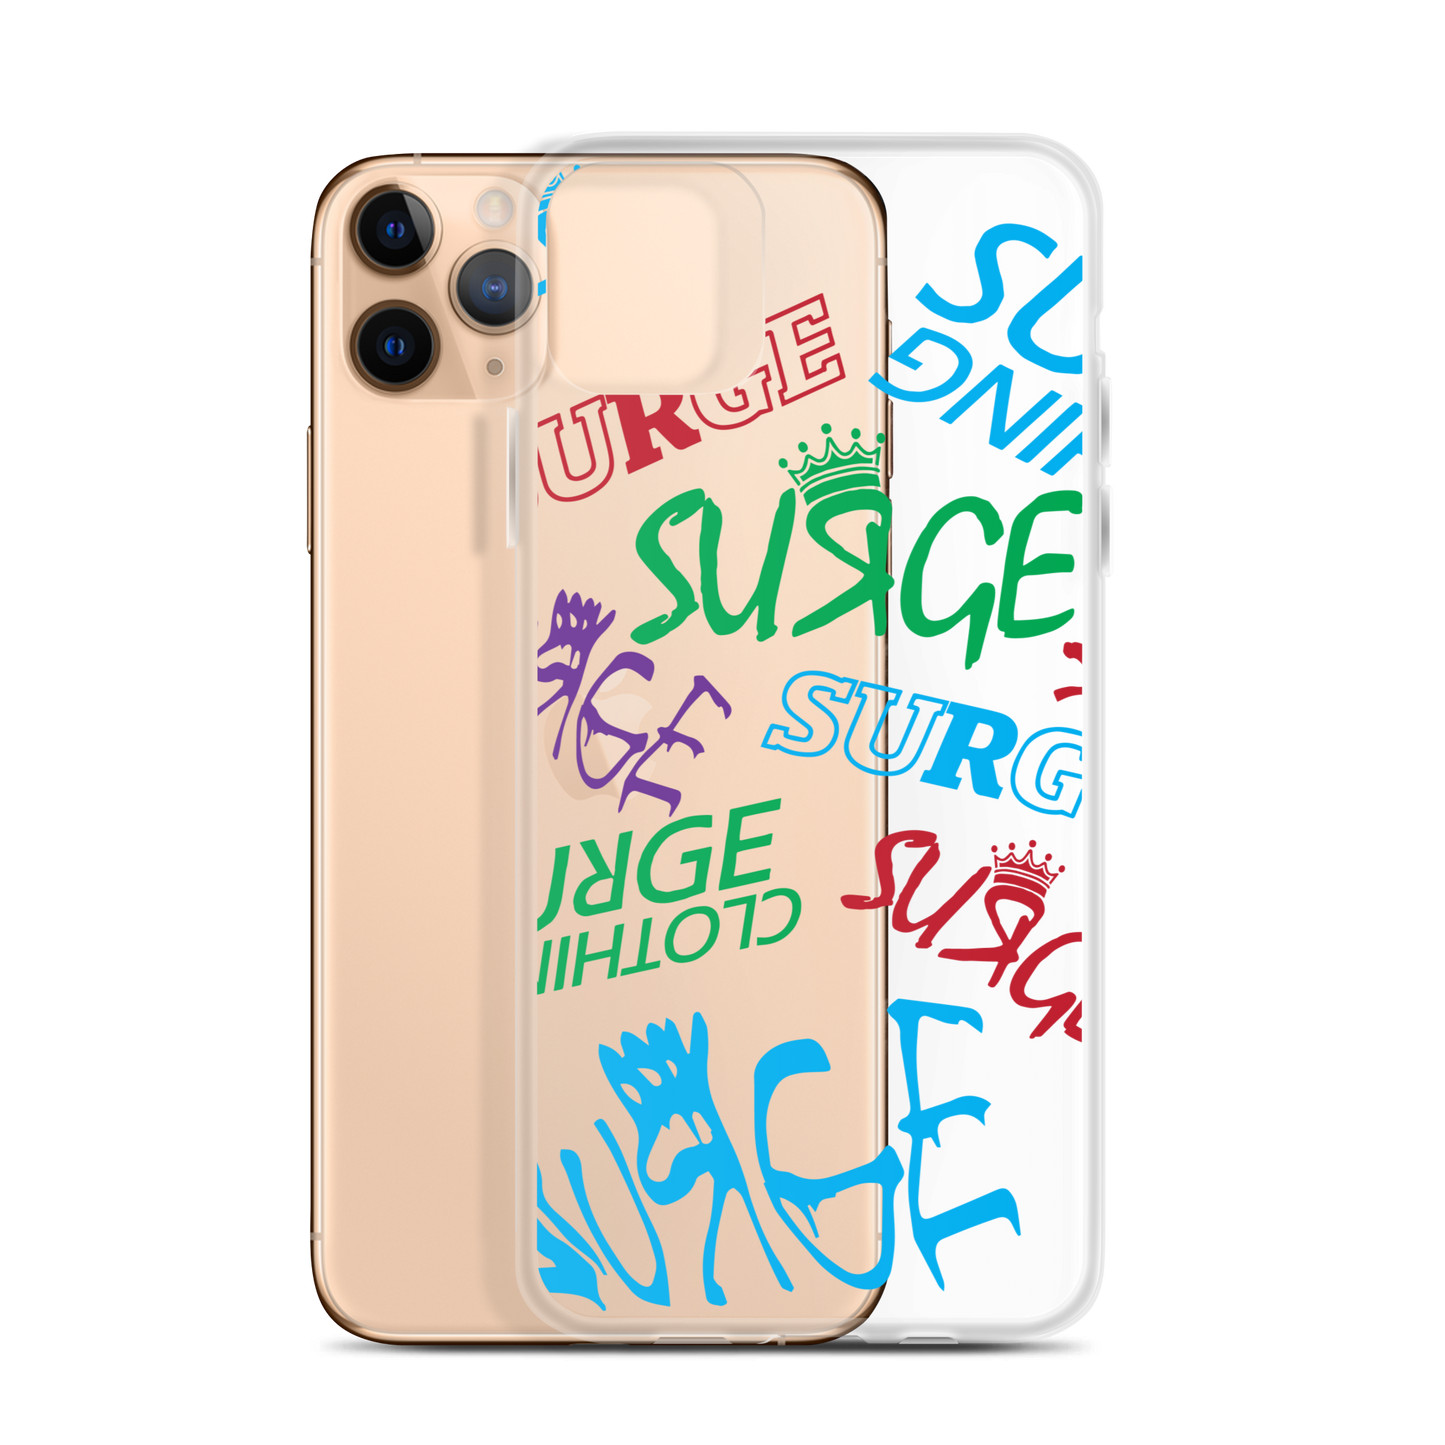 Surge iPhone® Case